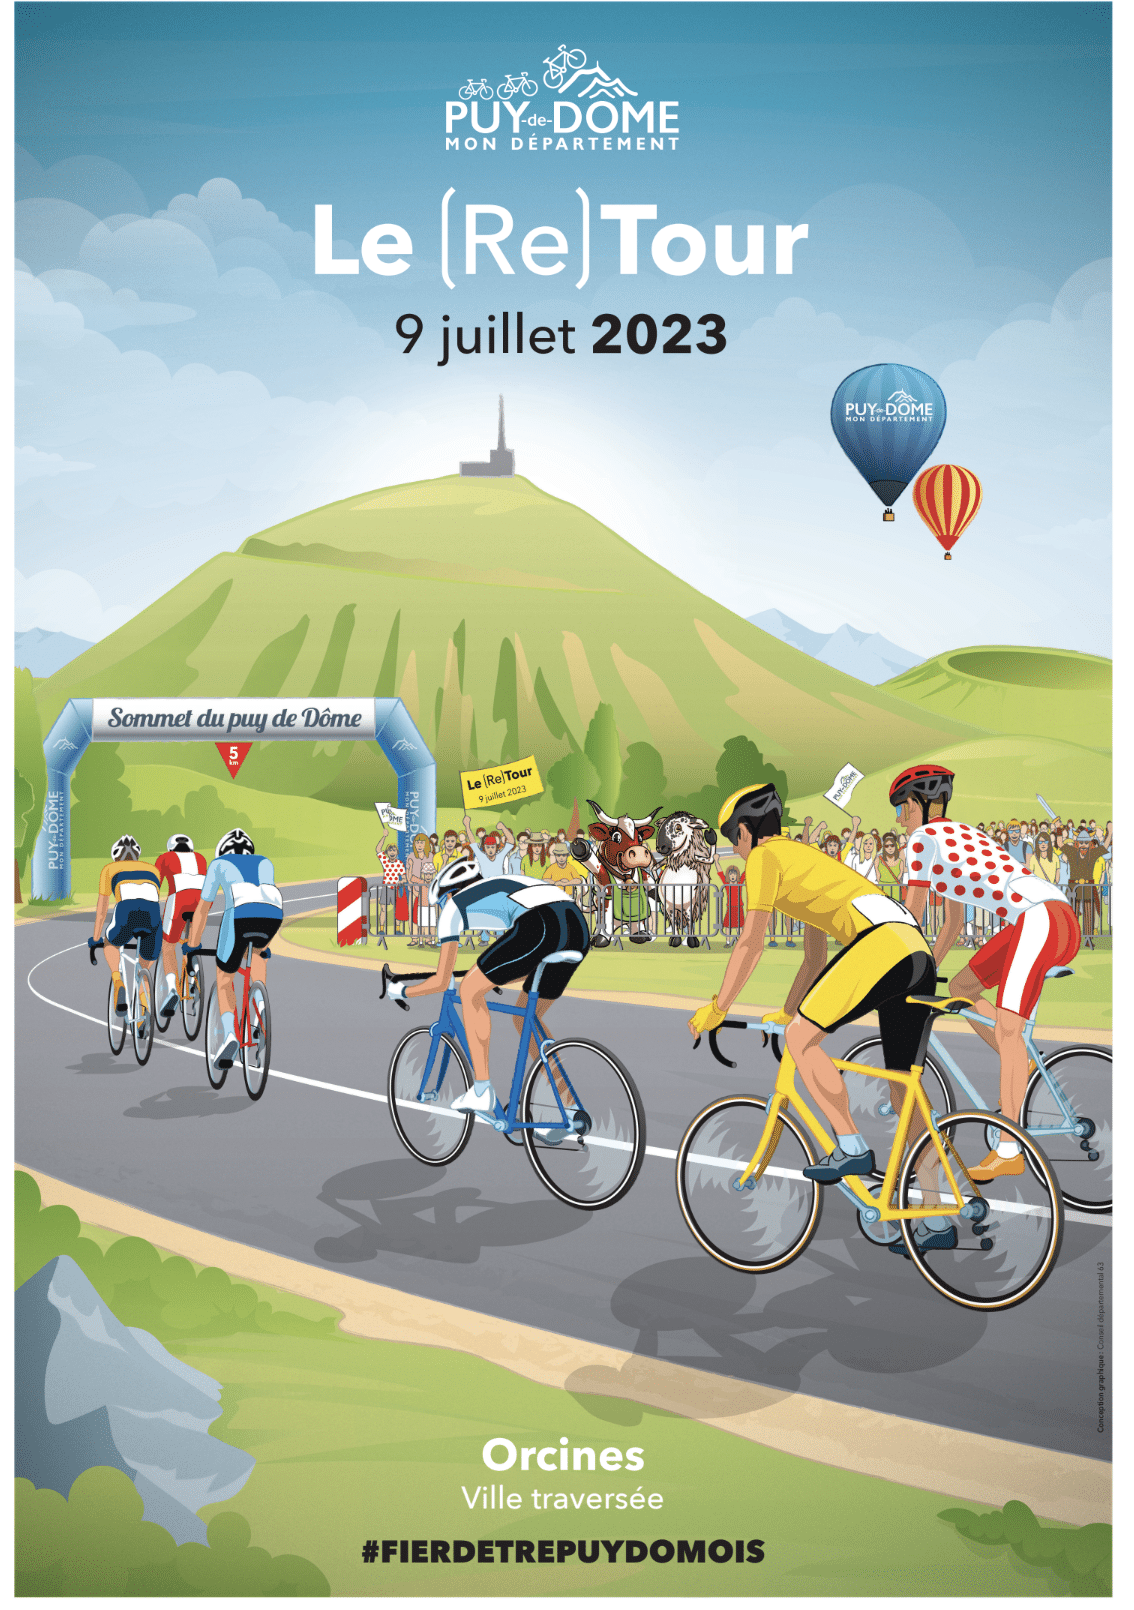 Le Tour de France 2023 mettra en vedette le Puy-de-Dôme pendant quatre jours consécutifs, à commencer par l'arrivée de l'événement au sommet du puy de Dôme le dimanche 9 juillet. Cette étape sera suivie d'une journée de repos à Clermont-Ferrand le lendemain. Puis, les coureurs poursuivront leur course avec une étape passionnante entre Vulcania et Issoire le mardi 11 juillet, avant de partir de la préfecture du Puy-de-Dôme en direction de Moulins le mercredi 12.